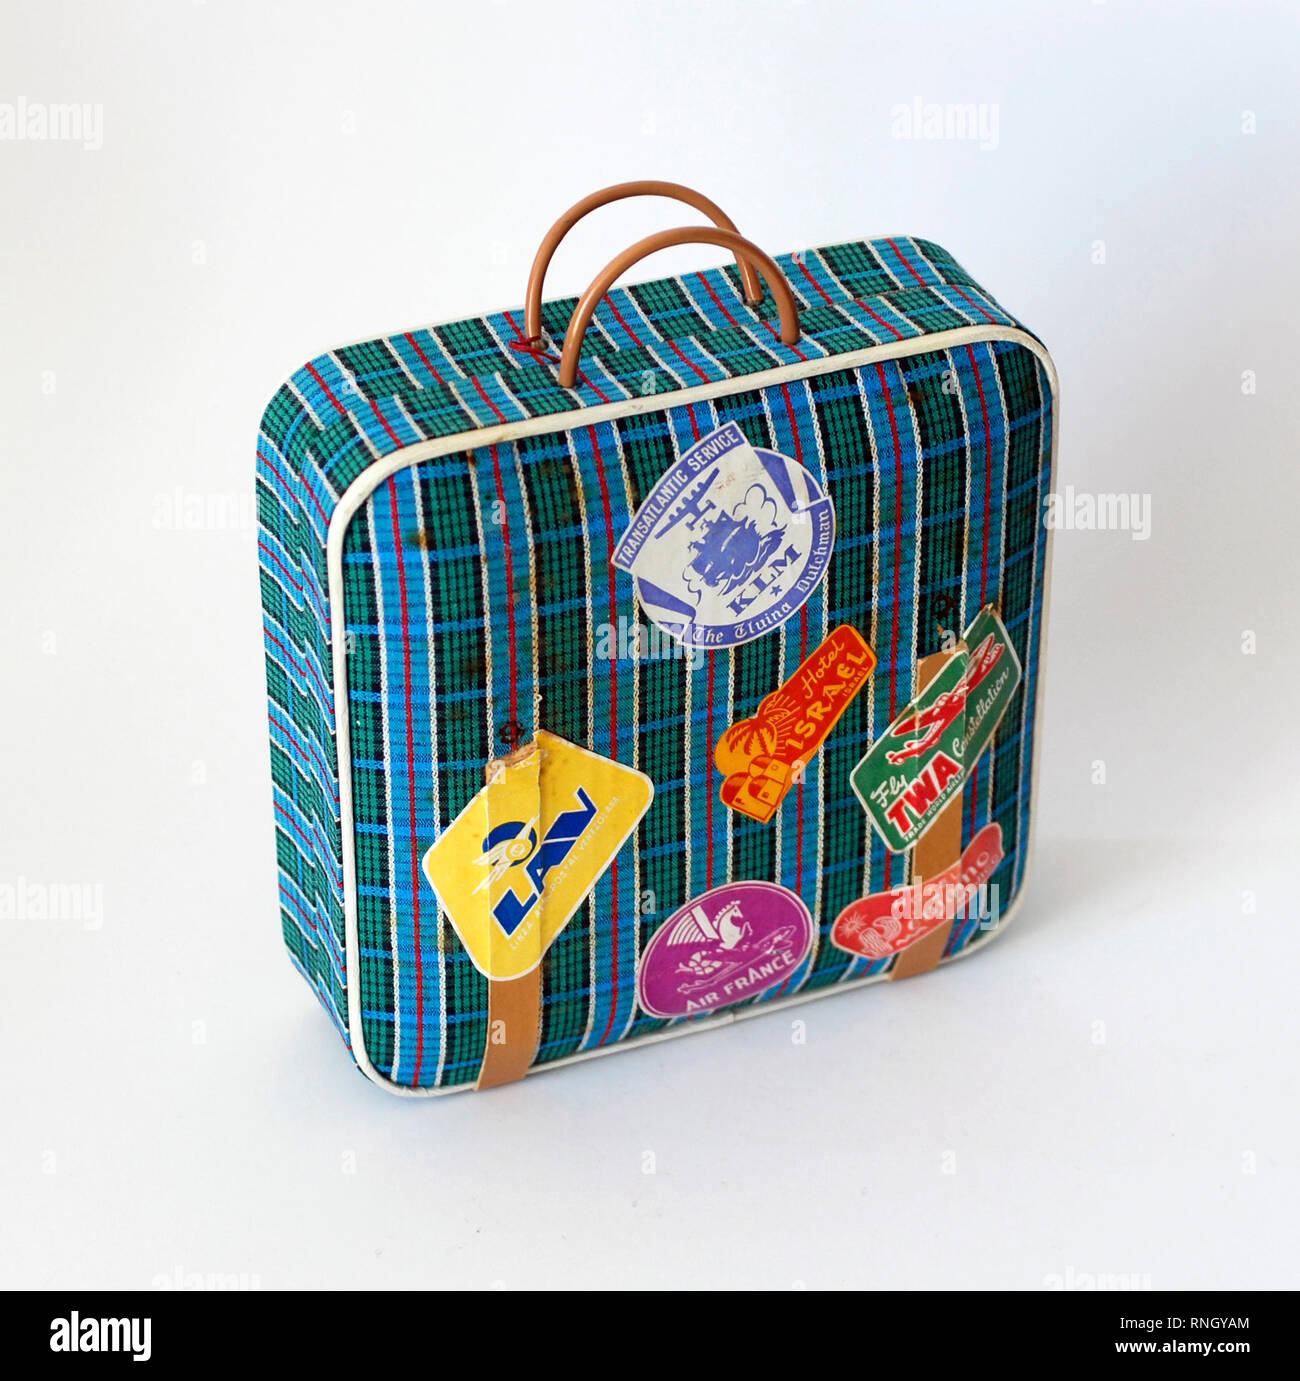 Vintage miniatur Koffer für Puppen, mit toy Aufkleber im Zusammenhang mit  Reisen: Fluggesellschaften, Hotels, etc Stockfotografie - Alamy